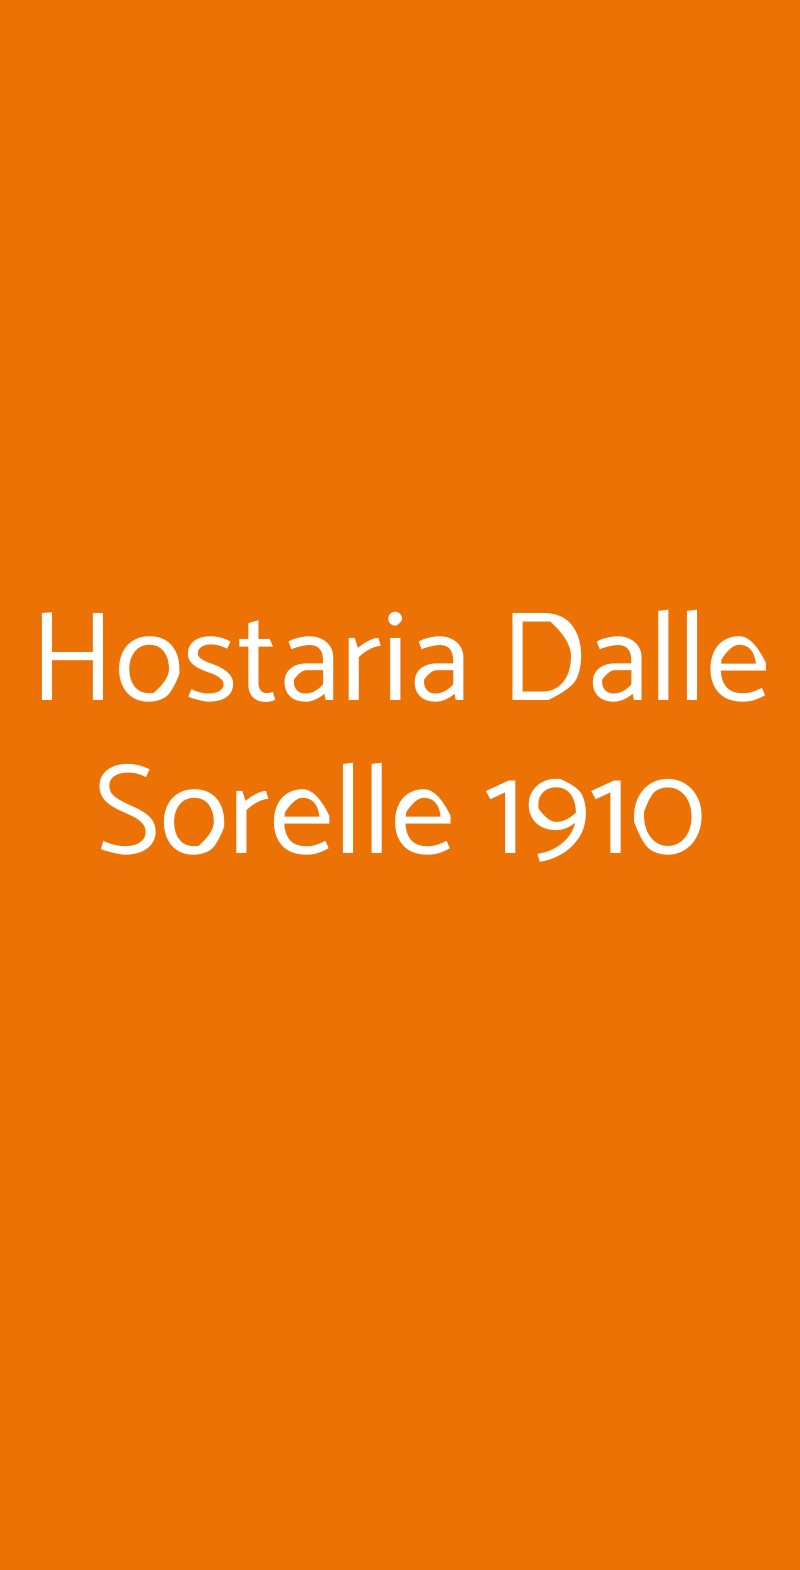 Hostaria Dalle Sorelle 1910 Napoli menù 1 pagina